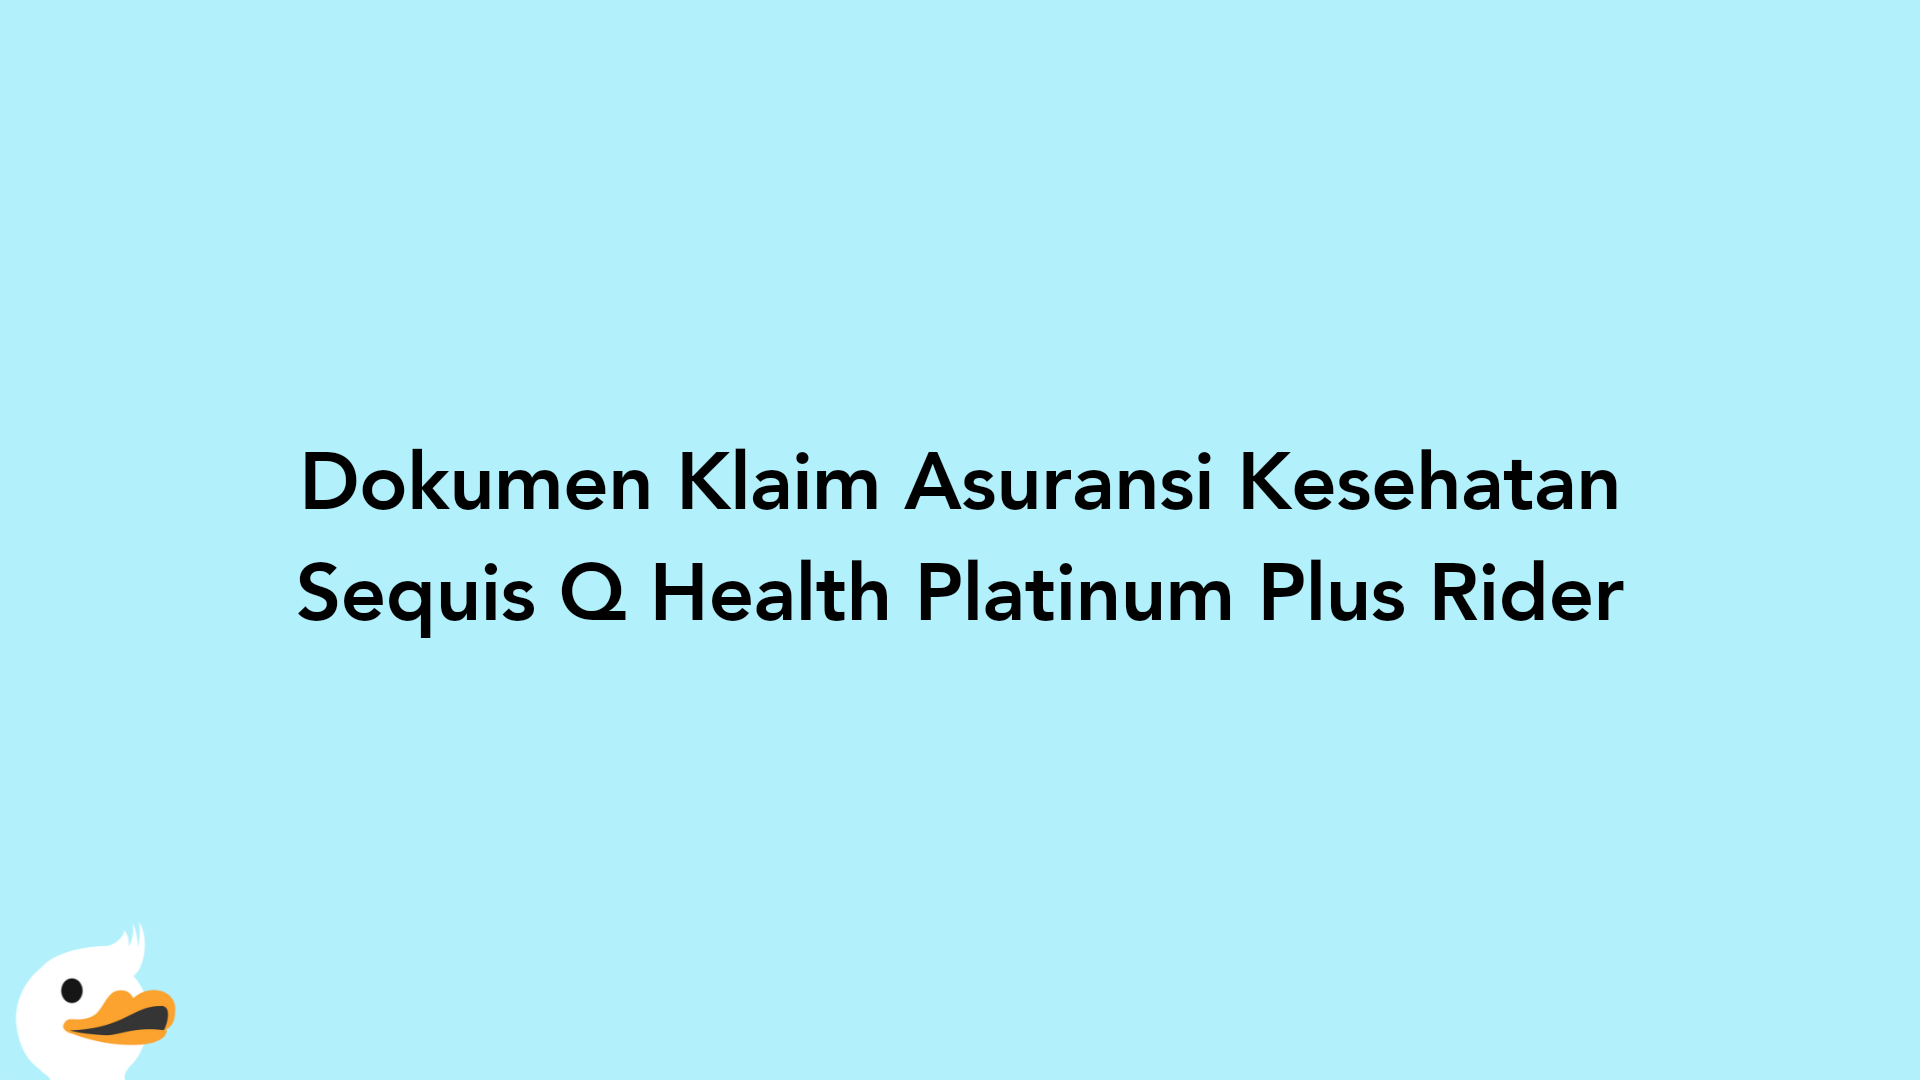 Dokumen Klaim Asuransi Kesehatan Sequis Q Health Platinum Plus Rider